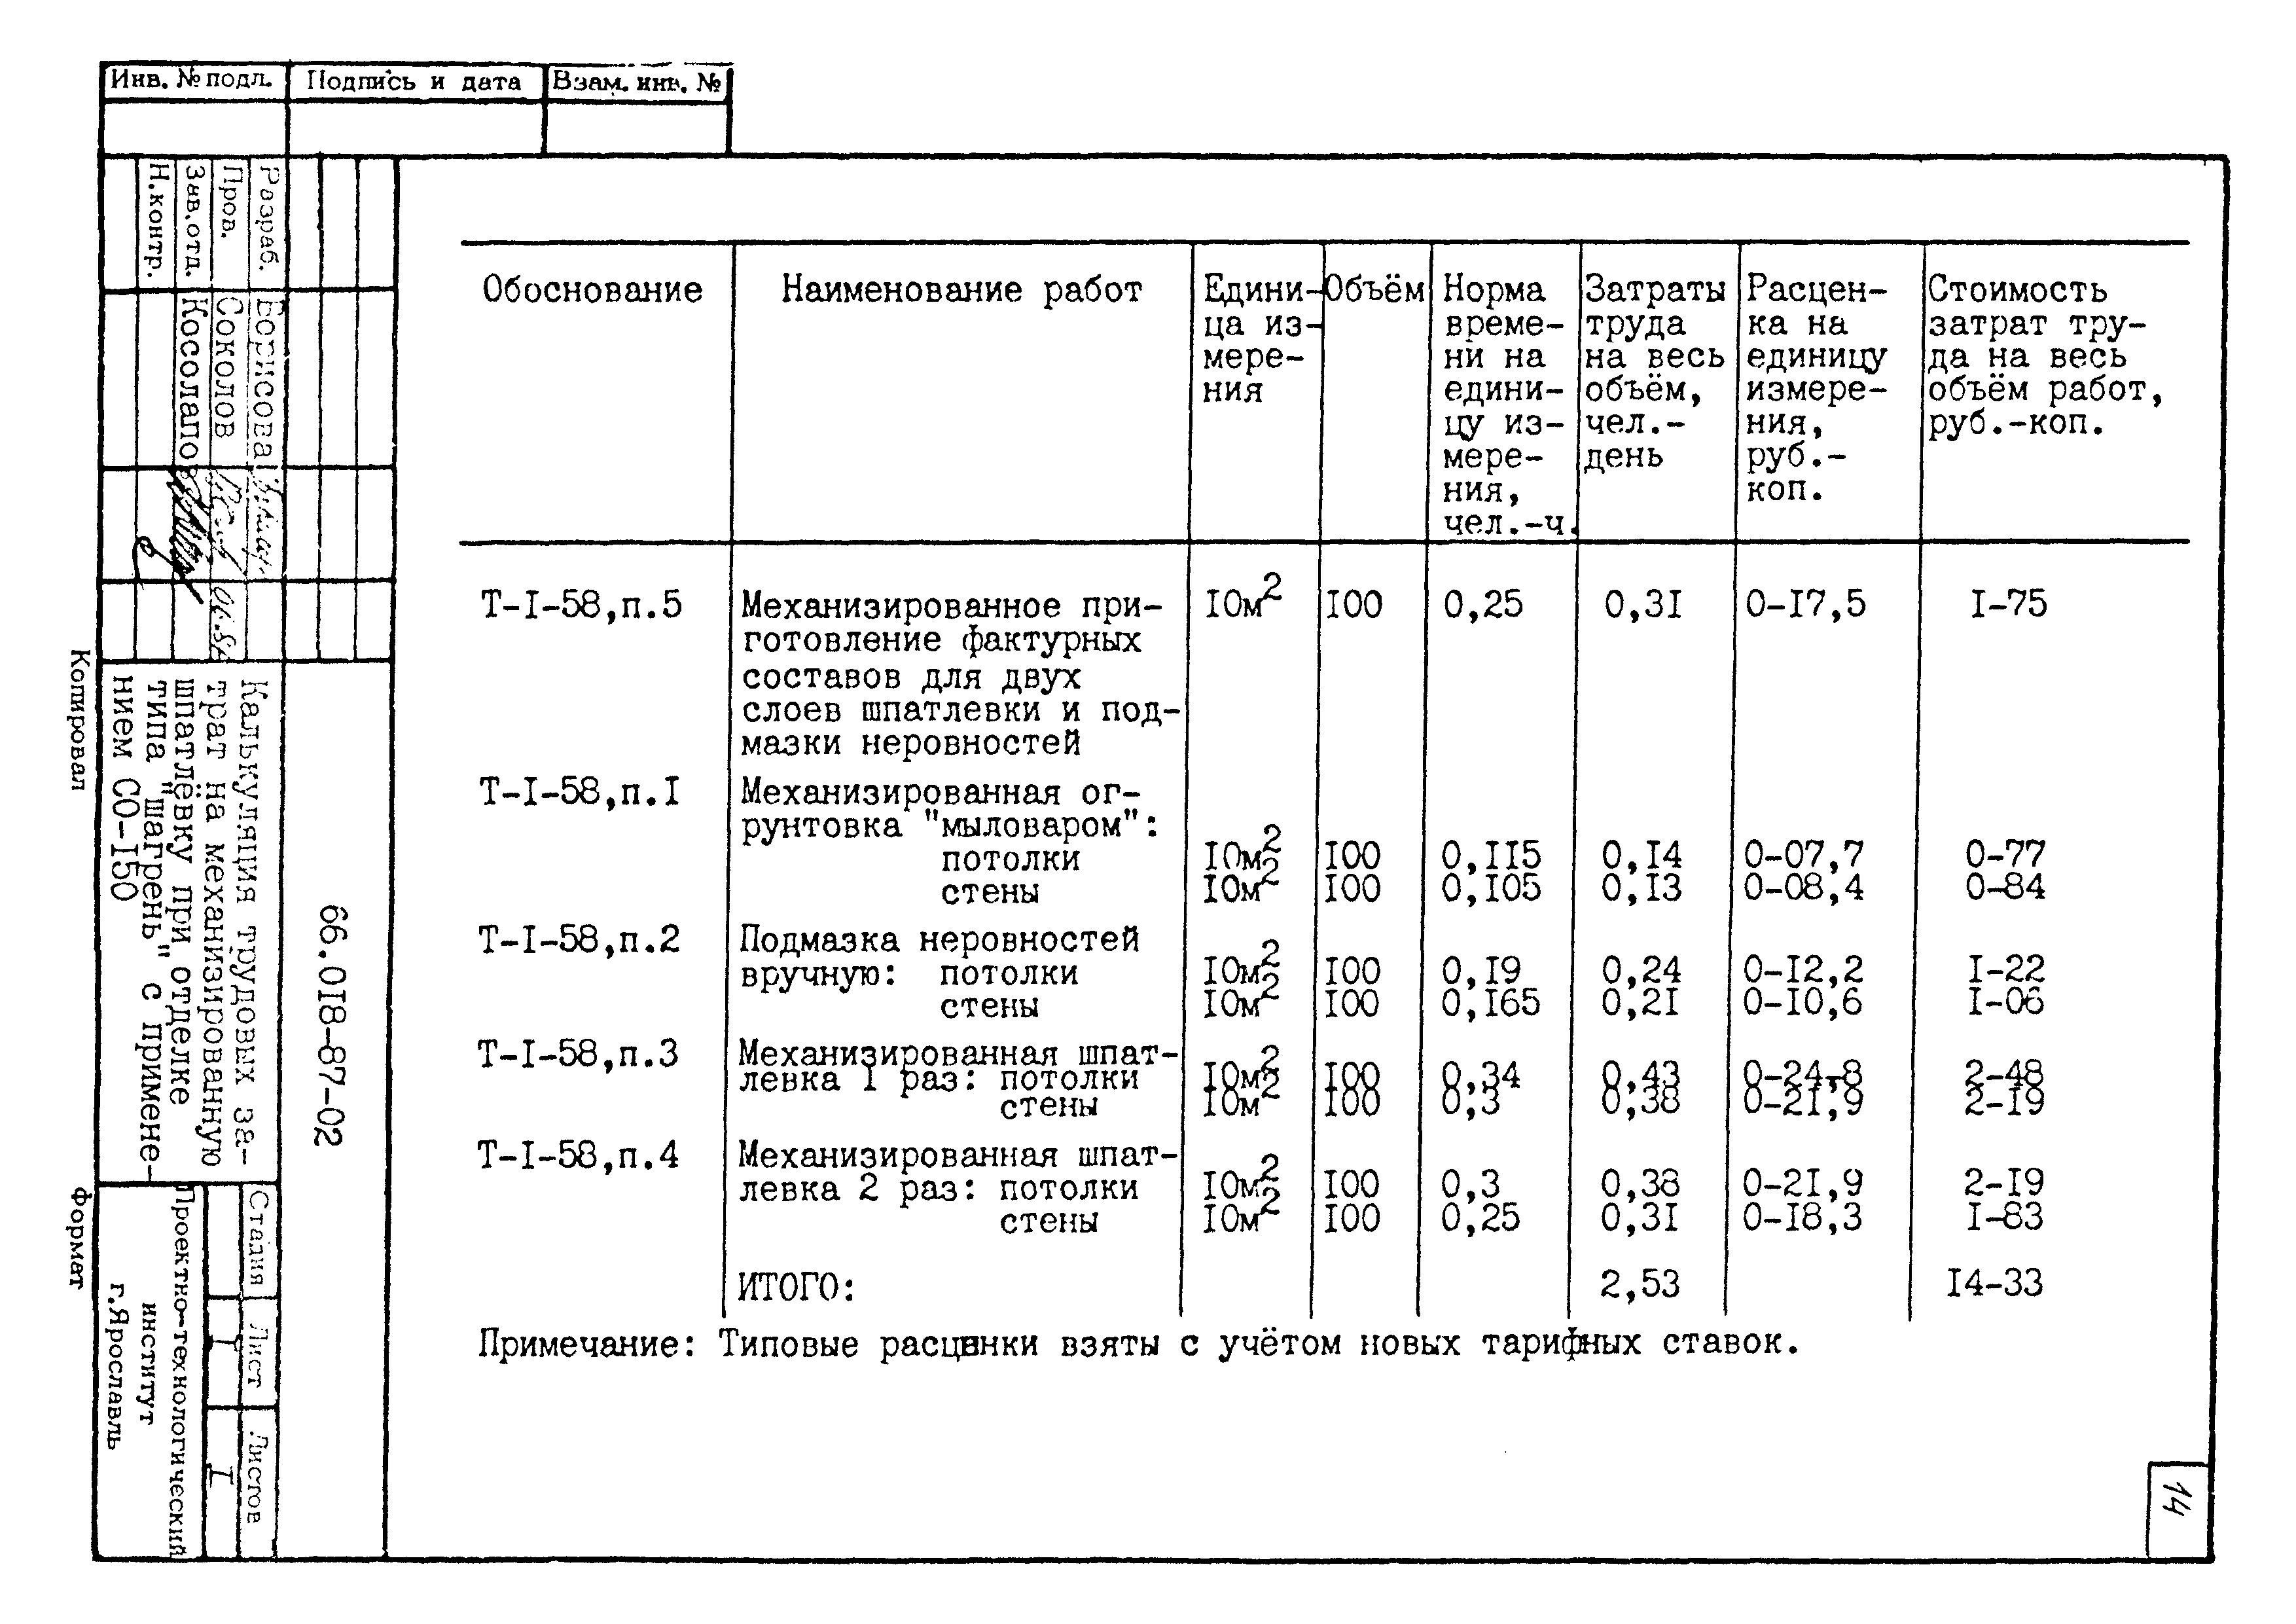 ТК 66.018-87